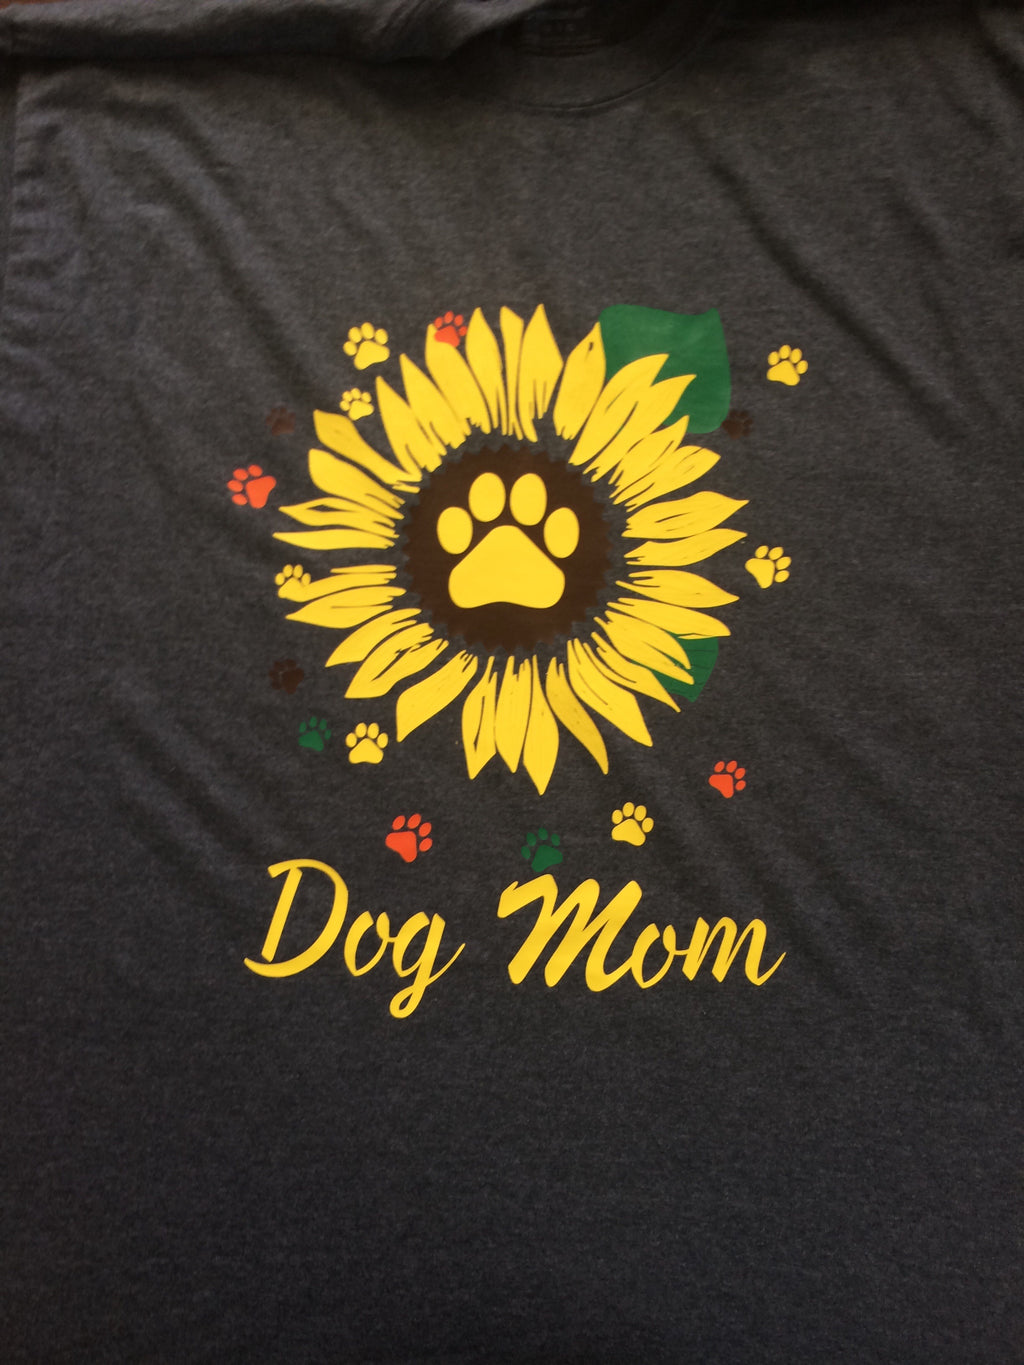 Dog mom Gildan T-shirt 50/50 blend